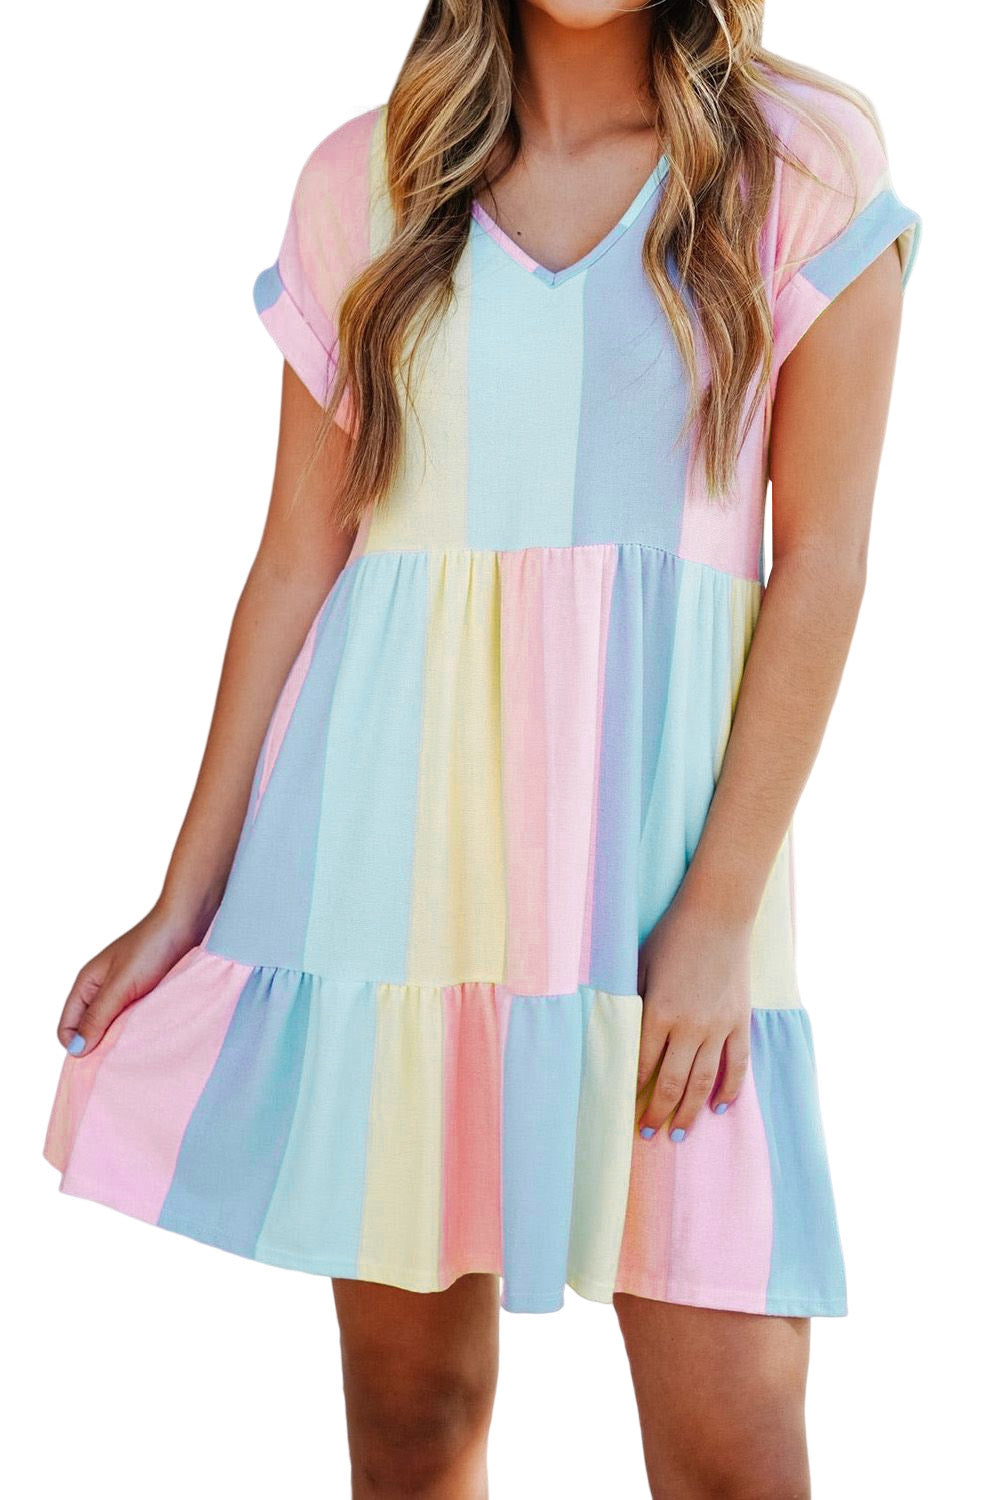 Višeslojna mini haljina s višestrukim prugama u boji